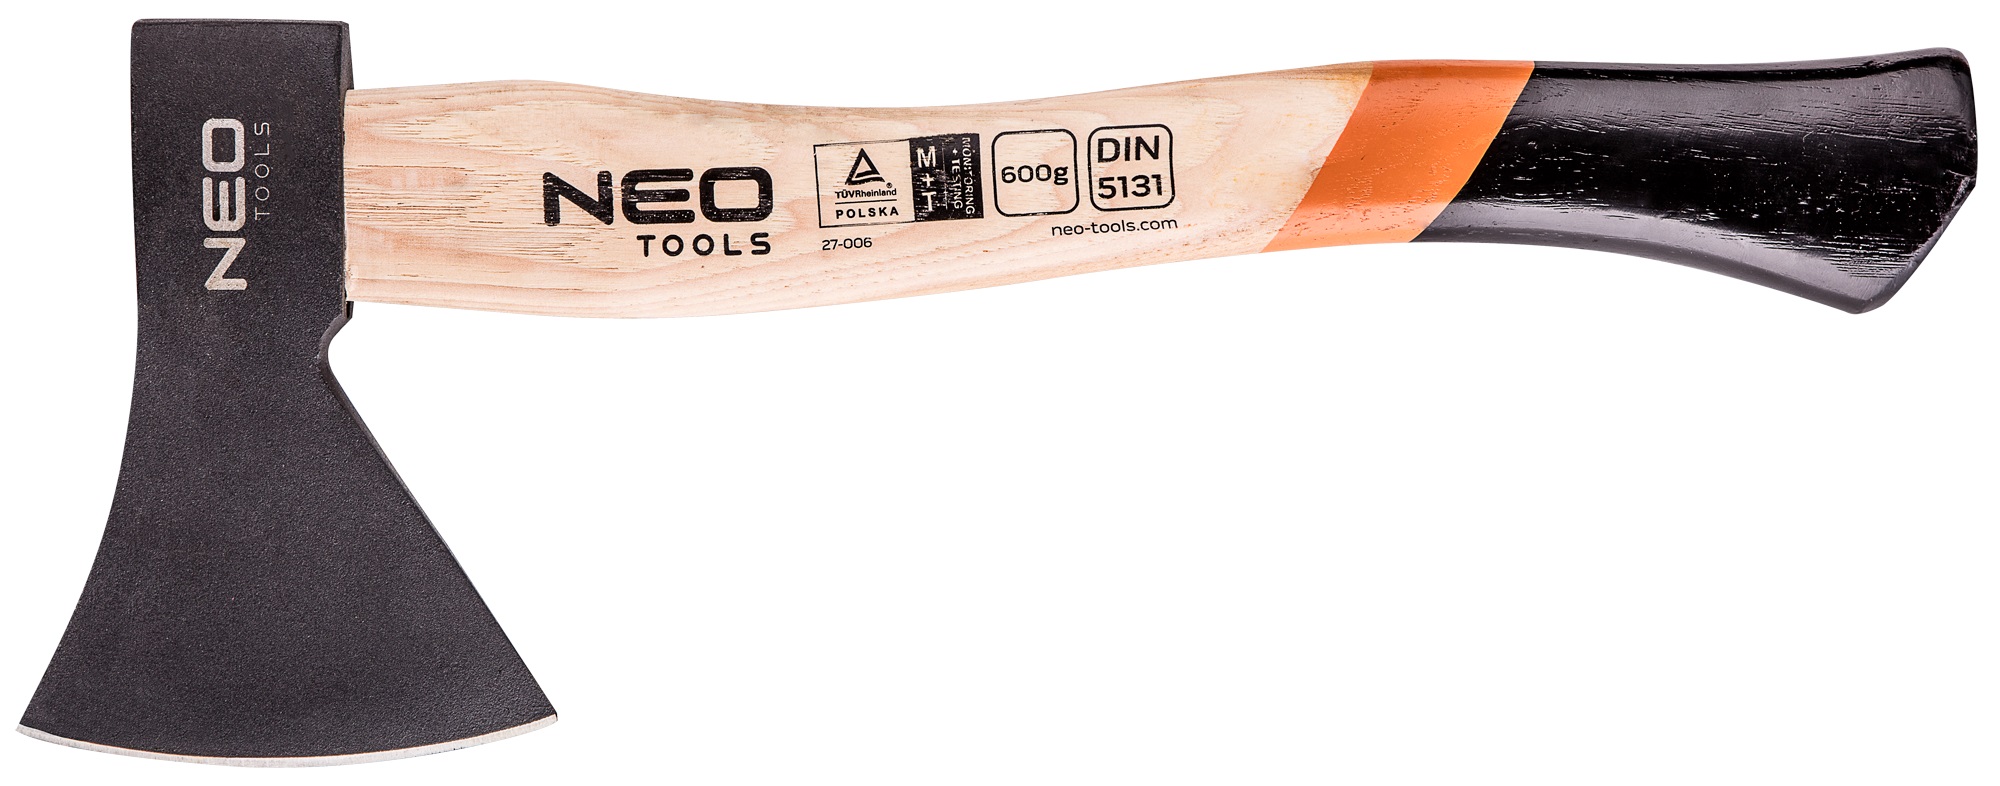 Колун Neo Tools 27-006 в інтернет-магазині, головне фото